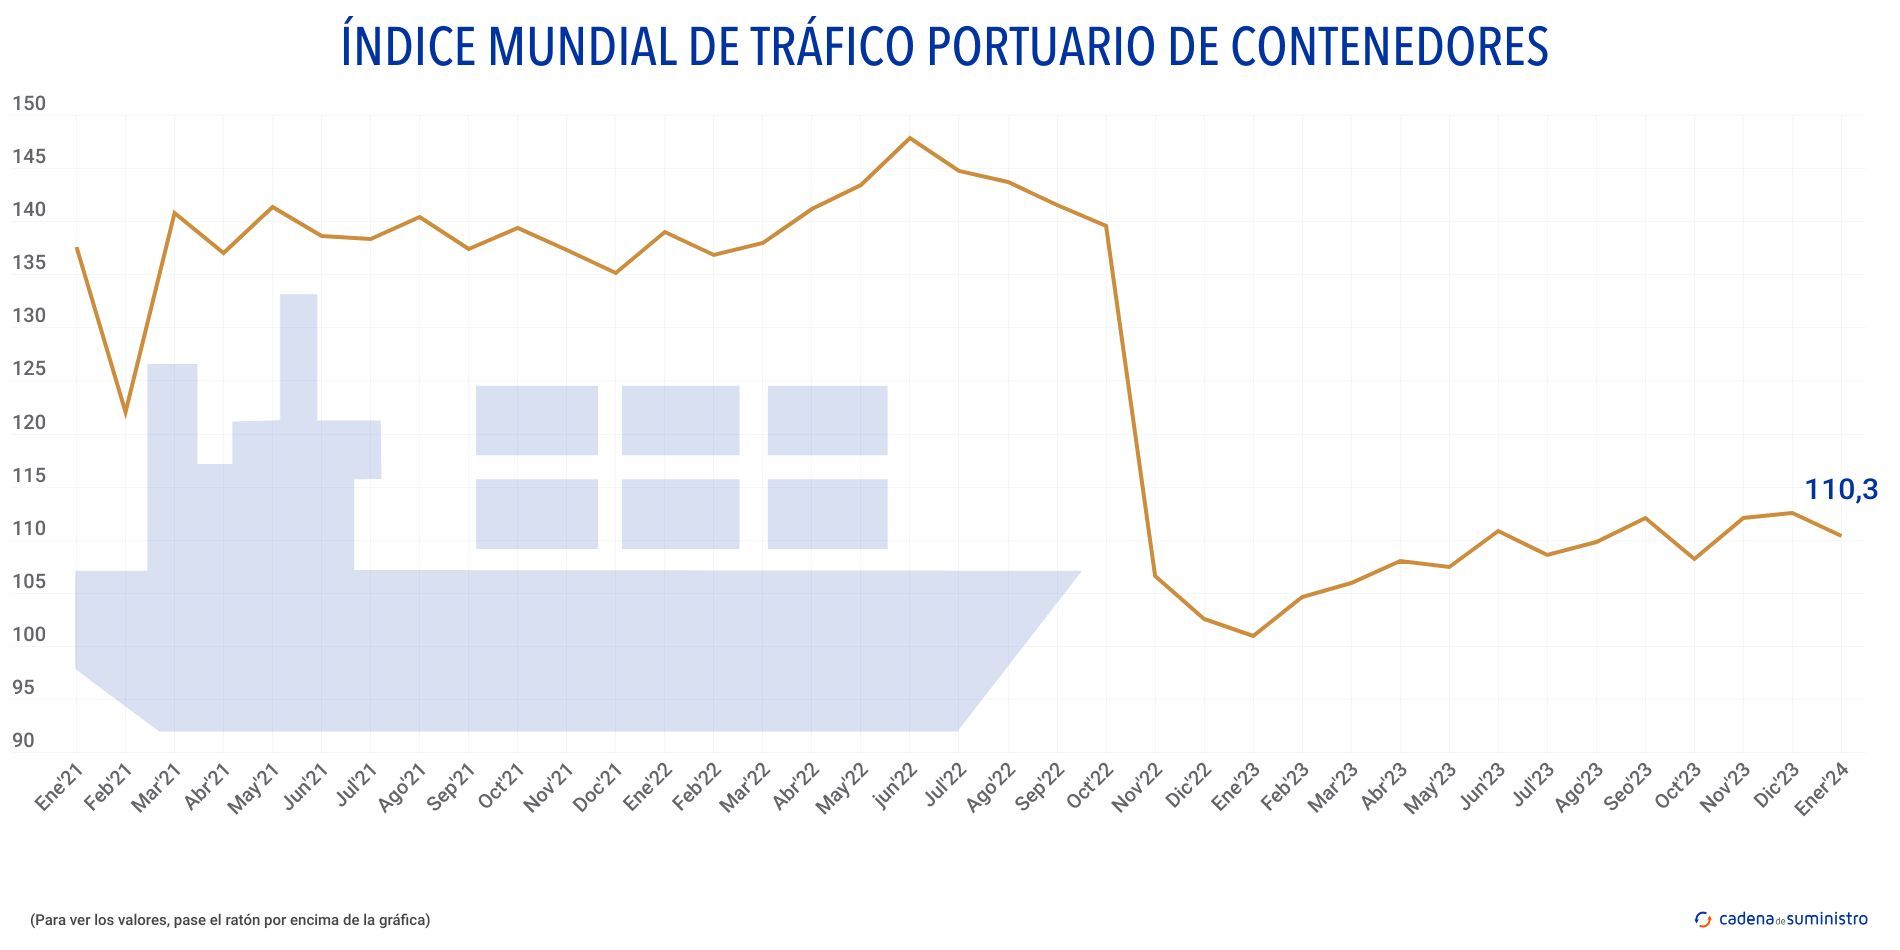 indice mundial de trafico portuario de contenedores